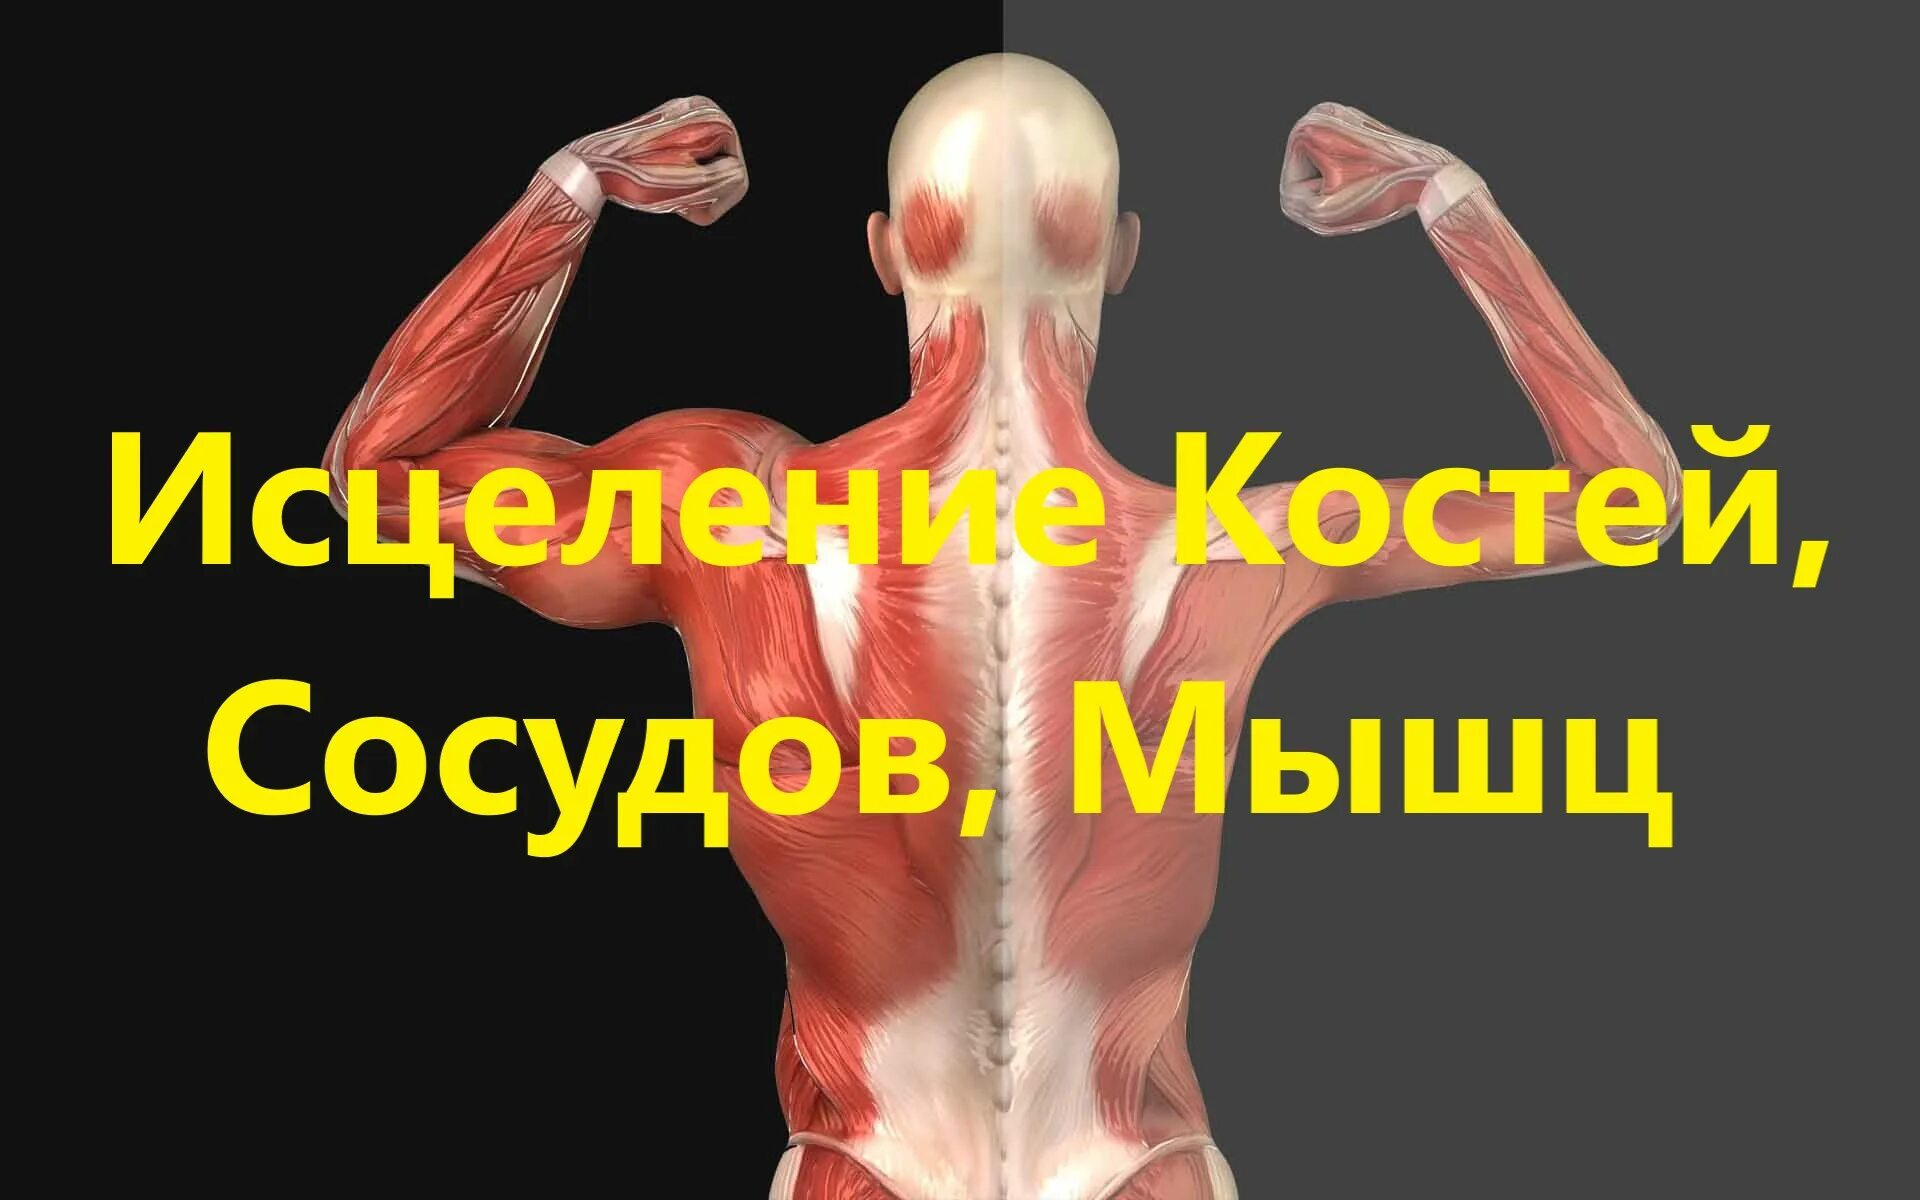 Матрица костей исцеление мышц. Гаряев матрица исцеления мышц, костей, сосудов. Матрица Гаряева исцеление костей сосудов мышц. Матрица Гаряева кости мышцы сосуды. Настоящая матрица Гаряева коррекция костно мышечной системы.